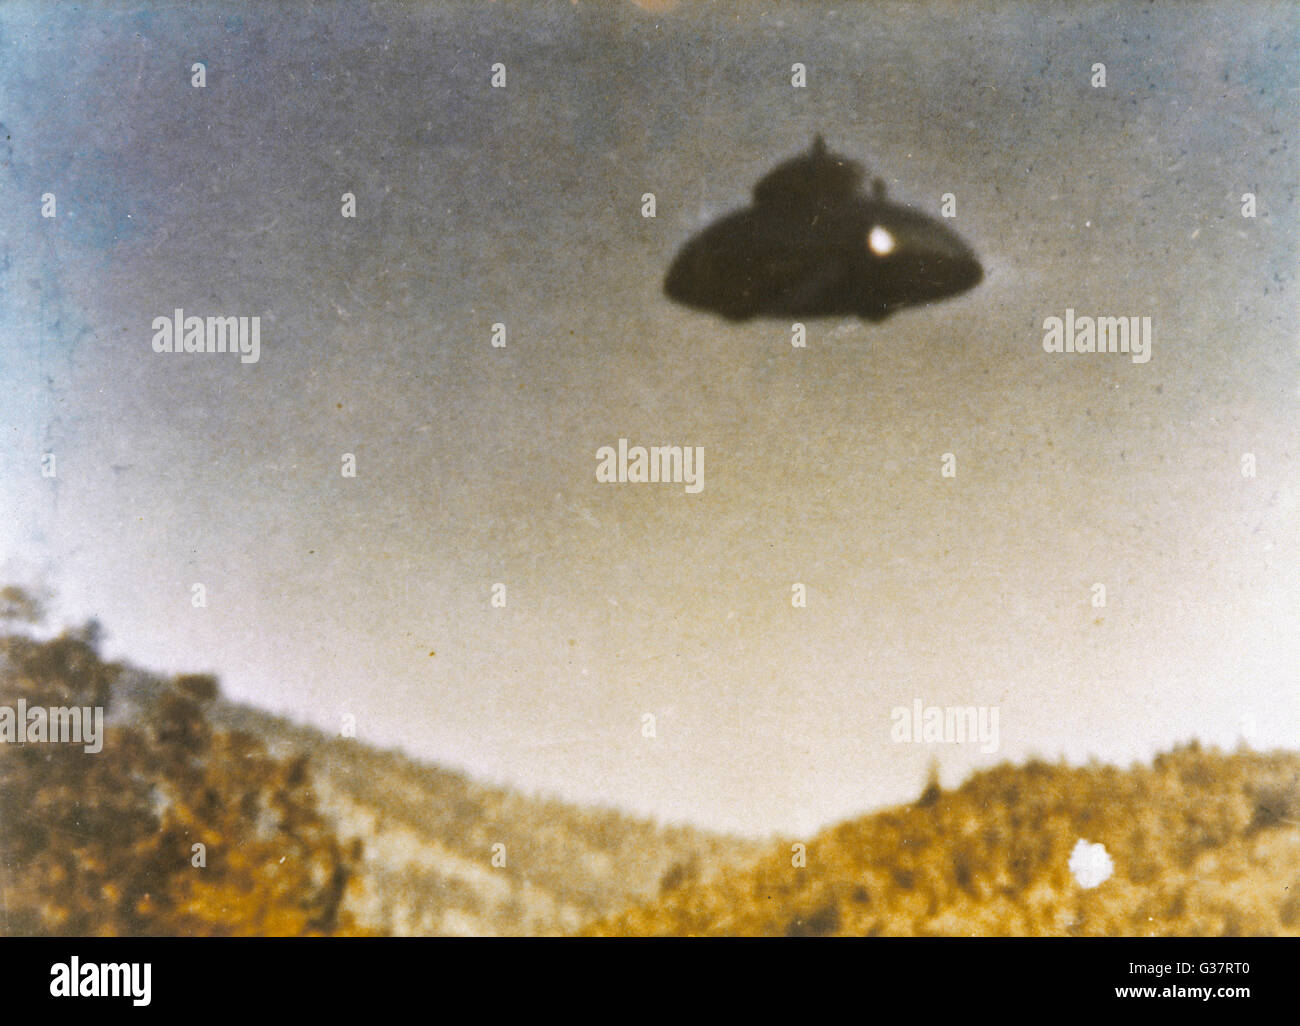 Adamski-type OVNI aurait été photographié par Fritz van Nest près de Kanab, Utah, en plein jour Date : 21 Mars 1968 Banque D'Images